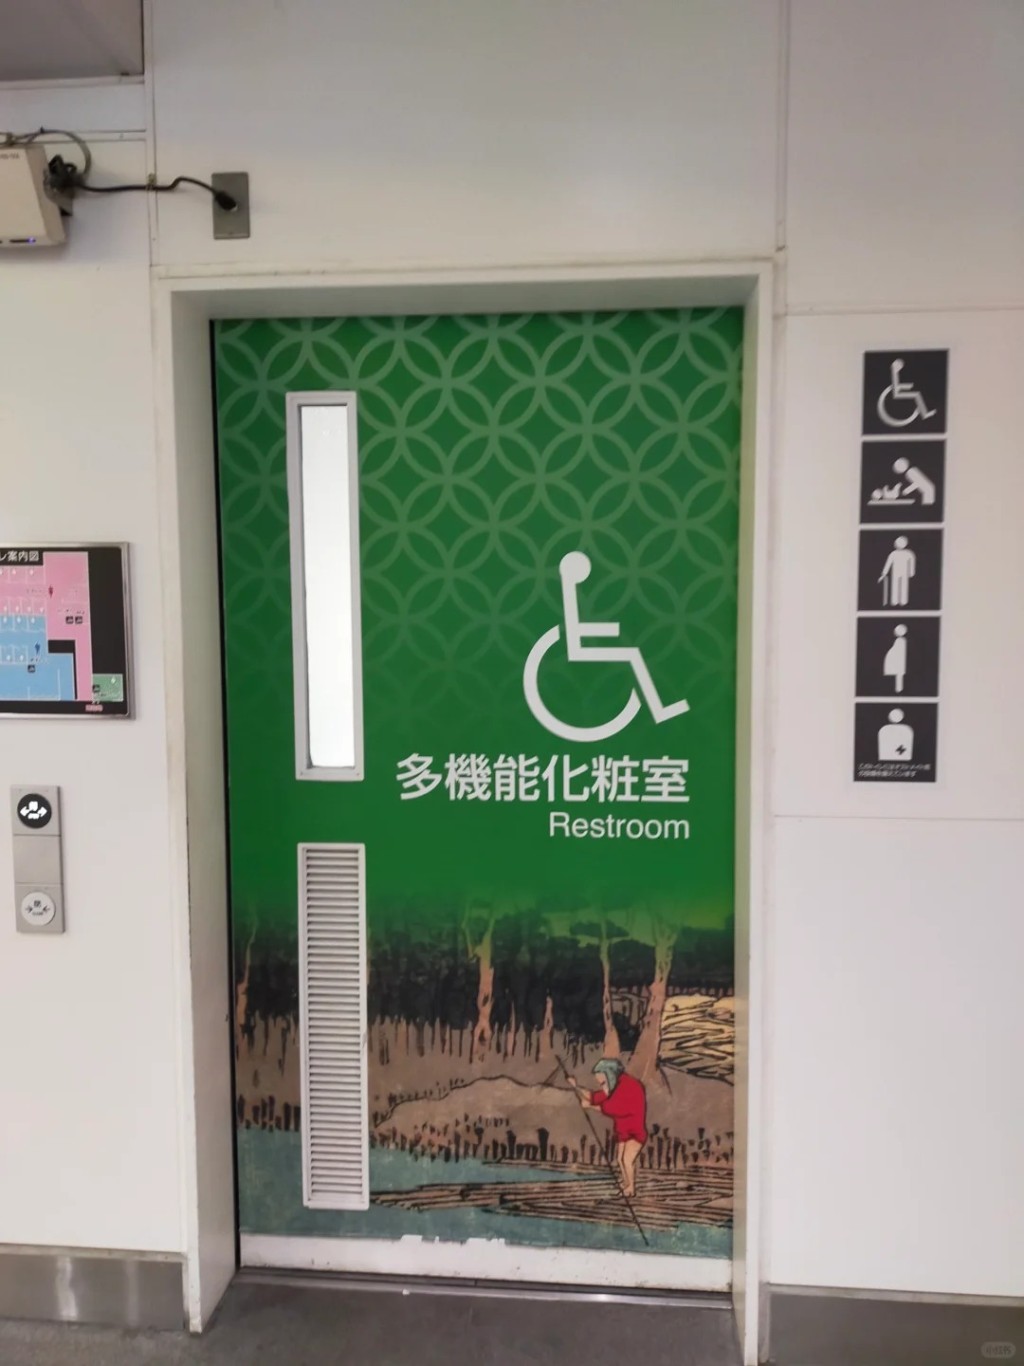 日本公共場所內的無障礙廁所。